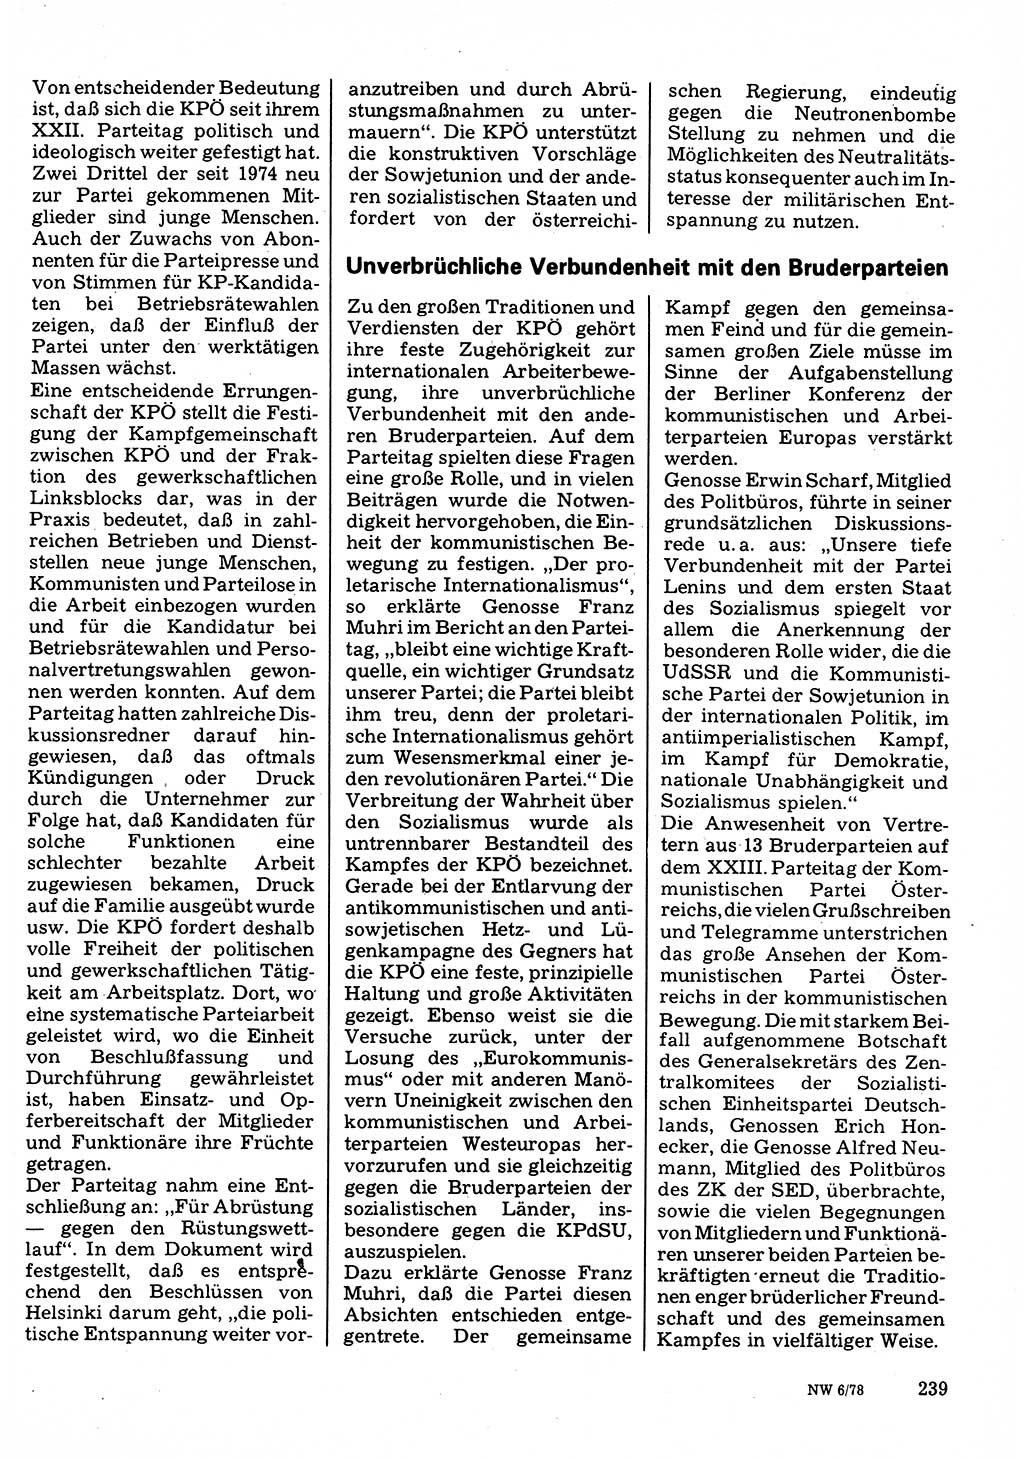 Neuer Weg (NW), Organ des Zentralkomitees (ZK) der SED (Sozialistische Einheitspartei Deutschlands) für Fragen des Parteilebens, 33. Jahrgang [Deutsche Demokratische Republik (DDR)] 1978, Seite 239 (NW ZK SED DDR 1978, S. 239)